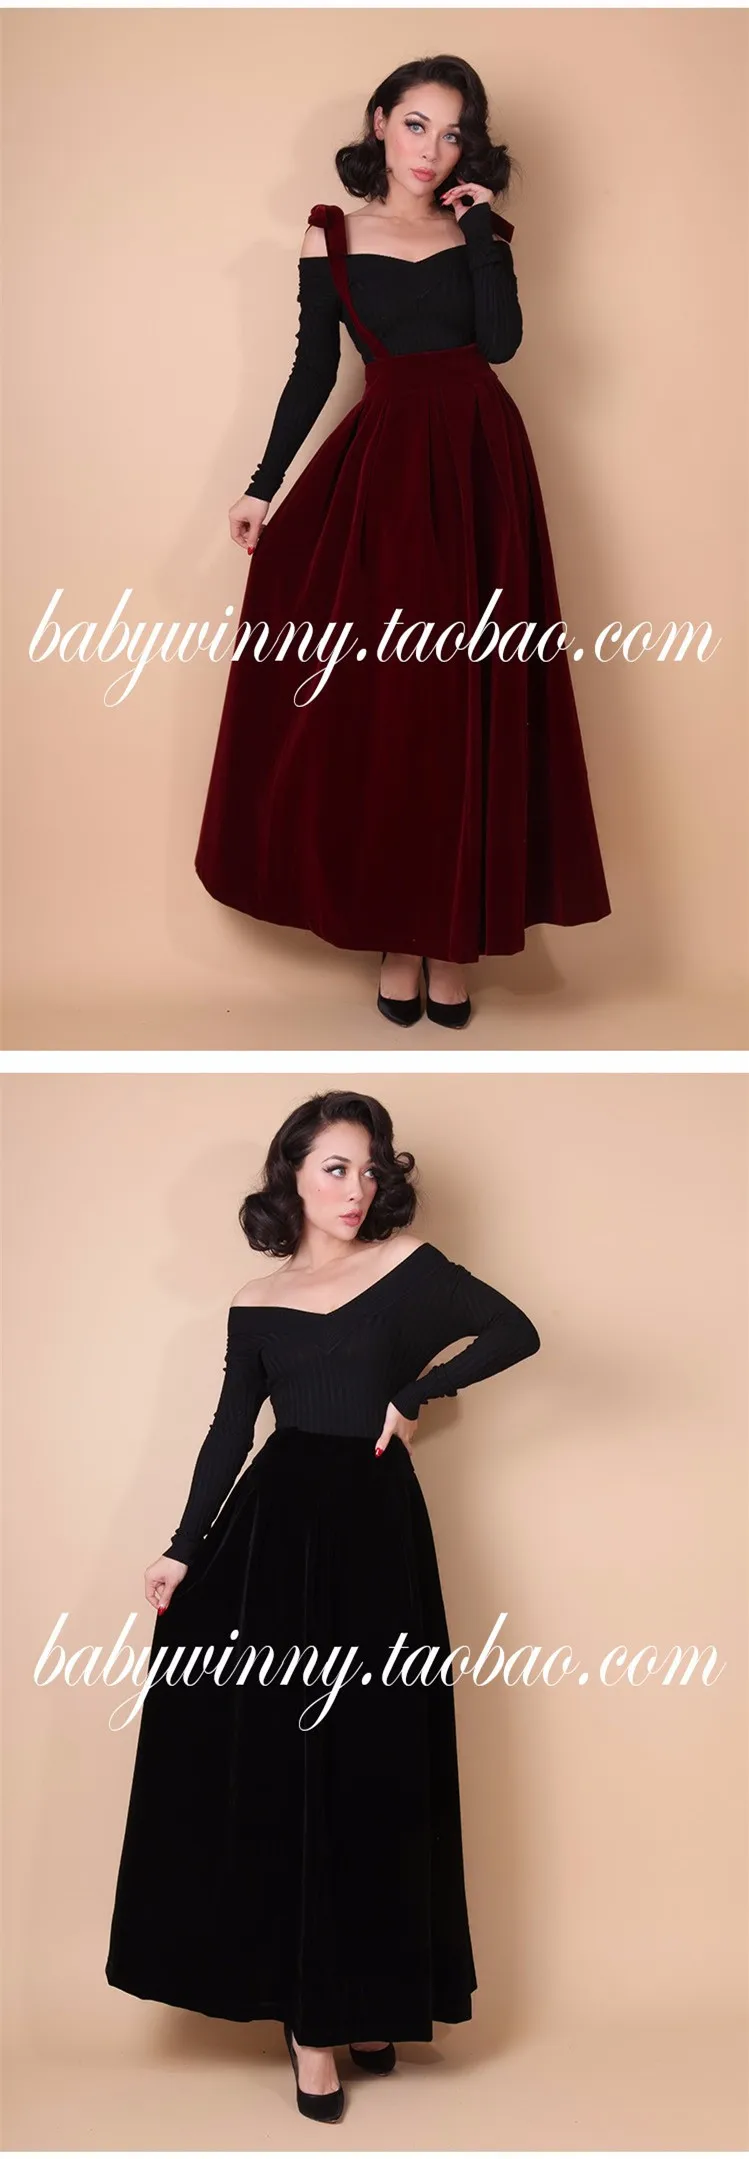 30-Женская винтажная Вельветовая юбка на подтяжках, 50 s, черная, бордовая длинная юбка, плюс размер, faldas jupe longue, велюровый комбинезон, юбки